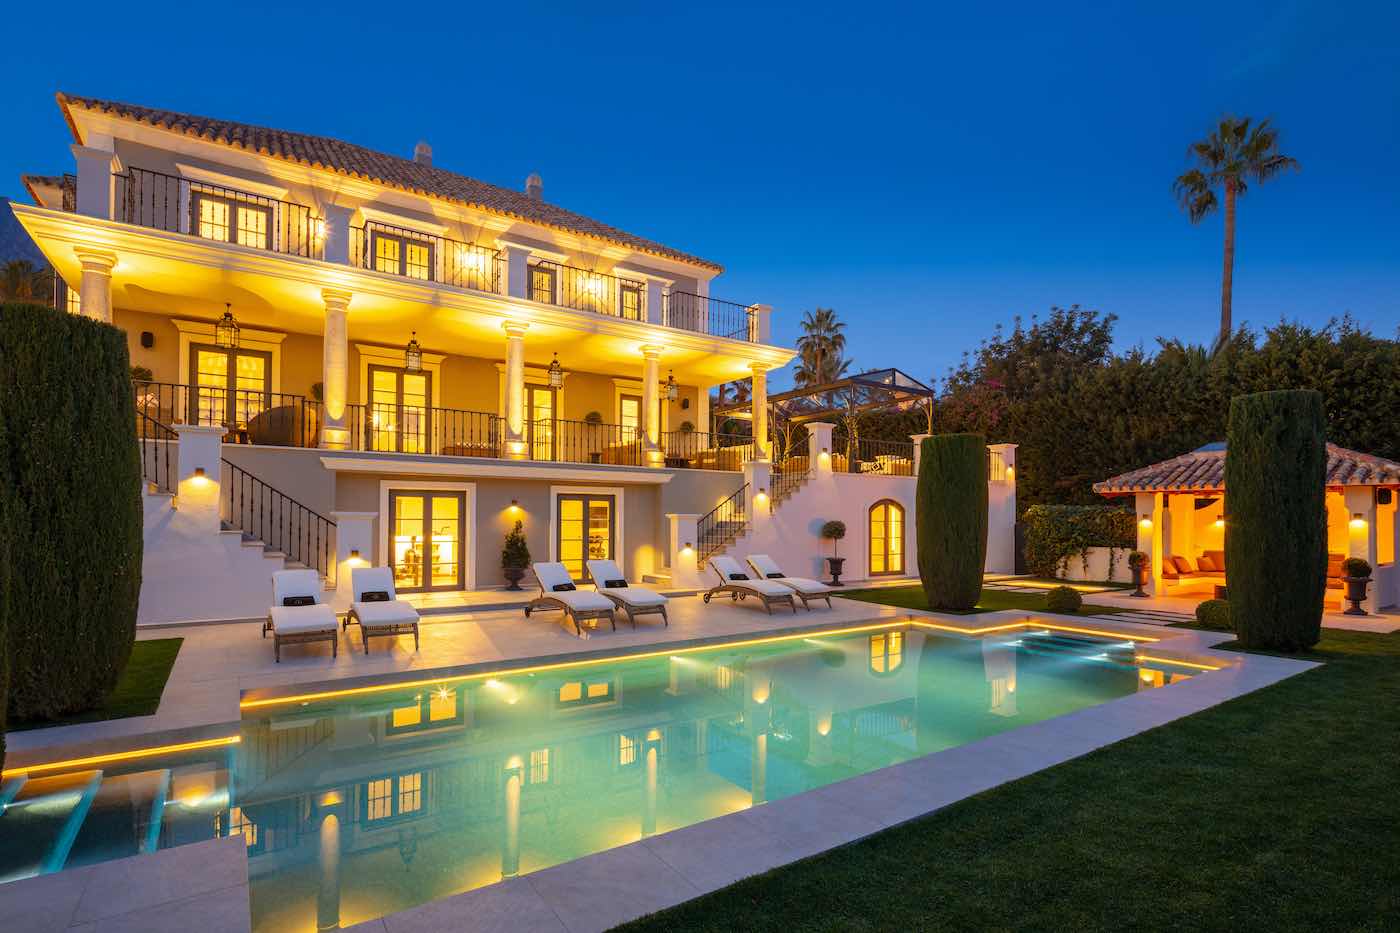 Ultra lujosa villa ubicada en uno de los enclaves más codiciados de Sierra Blanca, Marbella.